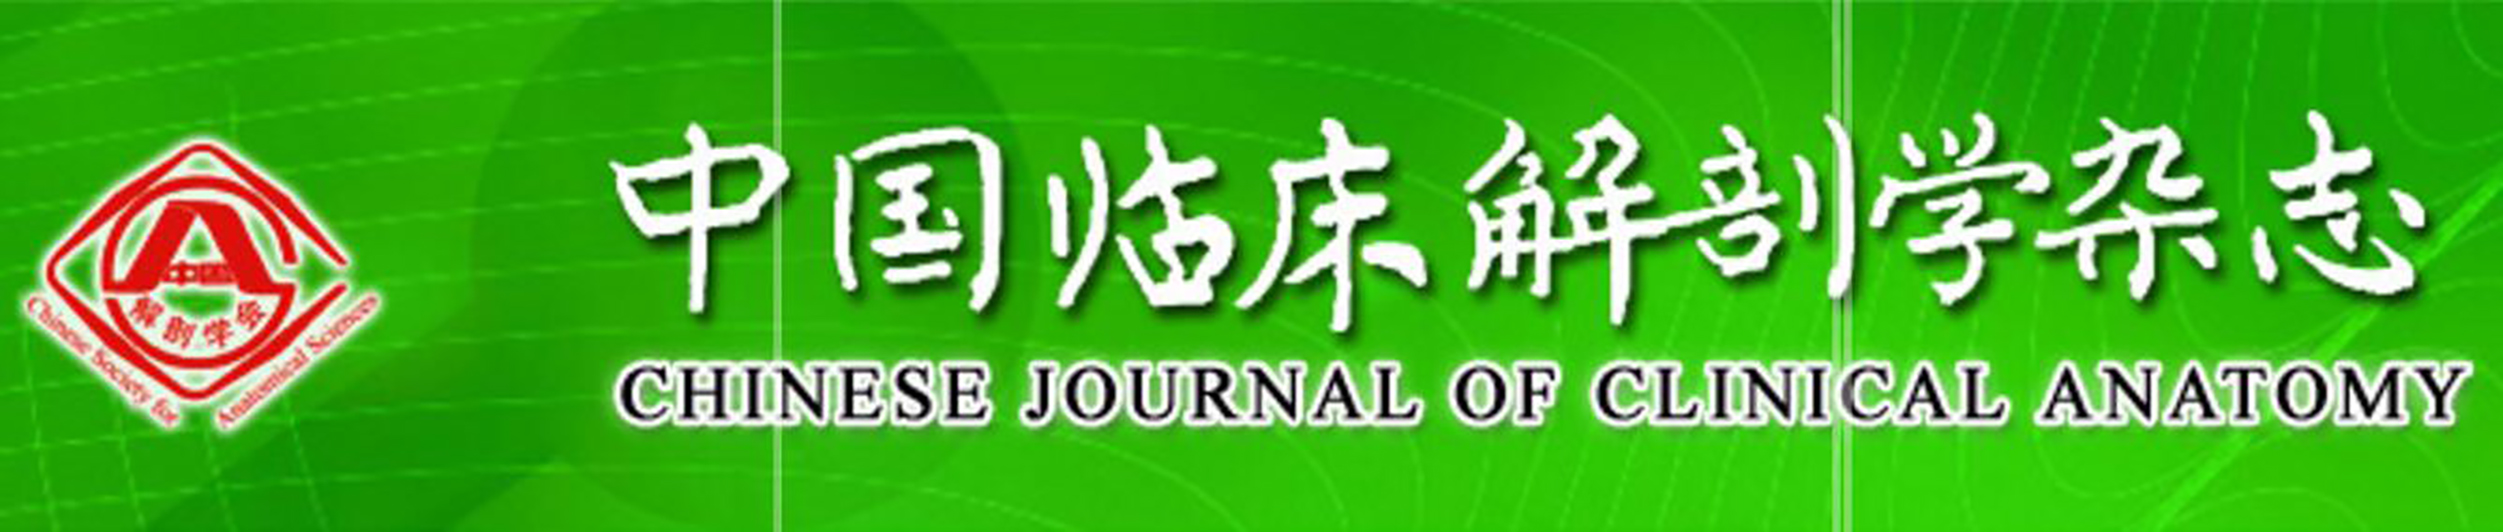 中國臨床解剖學雜誌